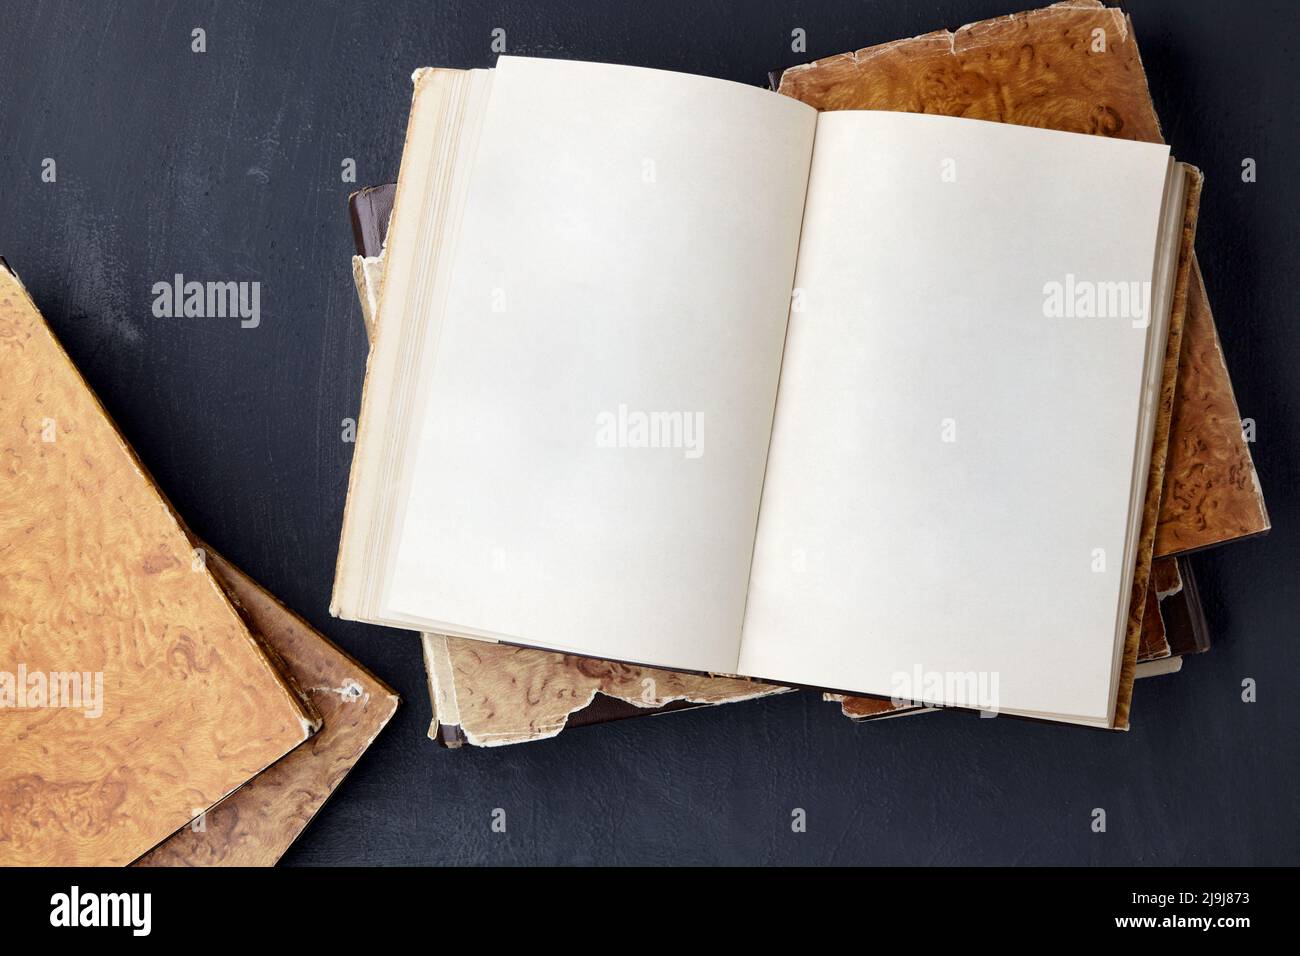 Le livre de bloc-notes vintage avec des pages vierges se trouve sur une pile de livres de merde sur une table en béton noir Banque D'Images